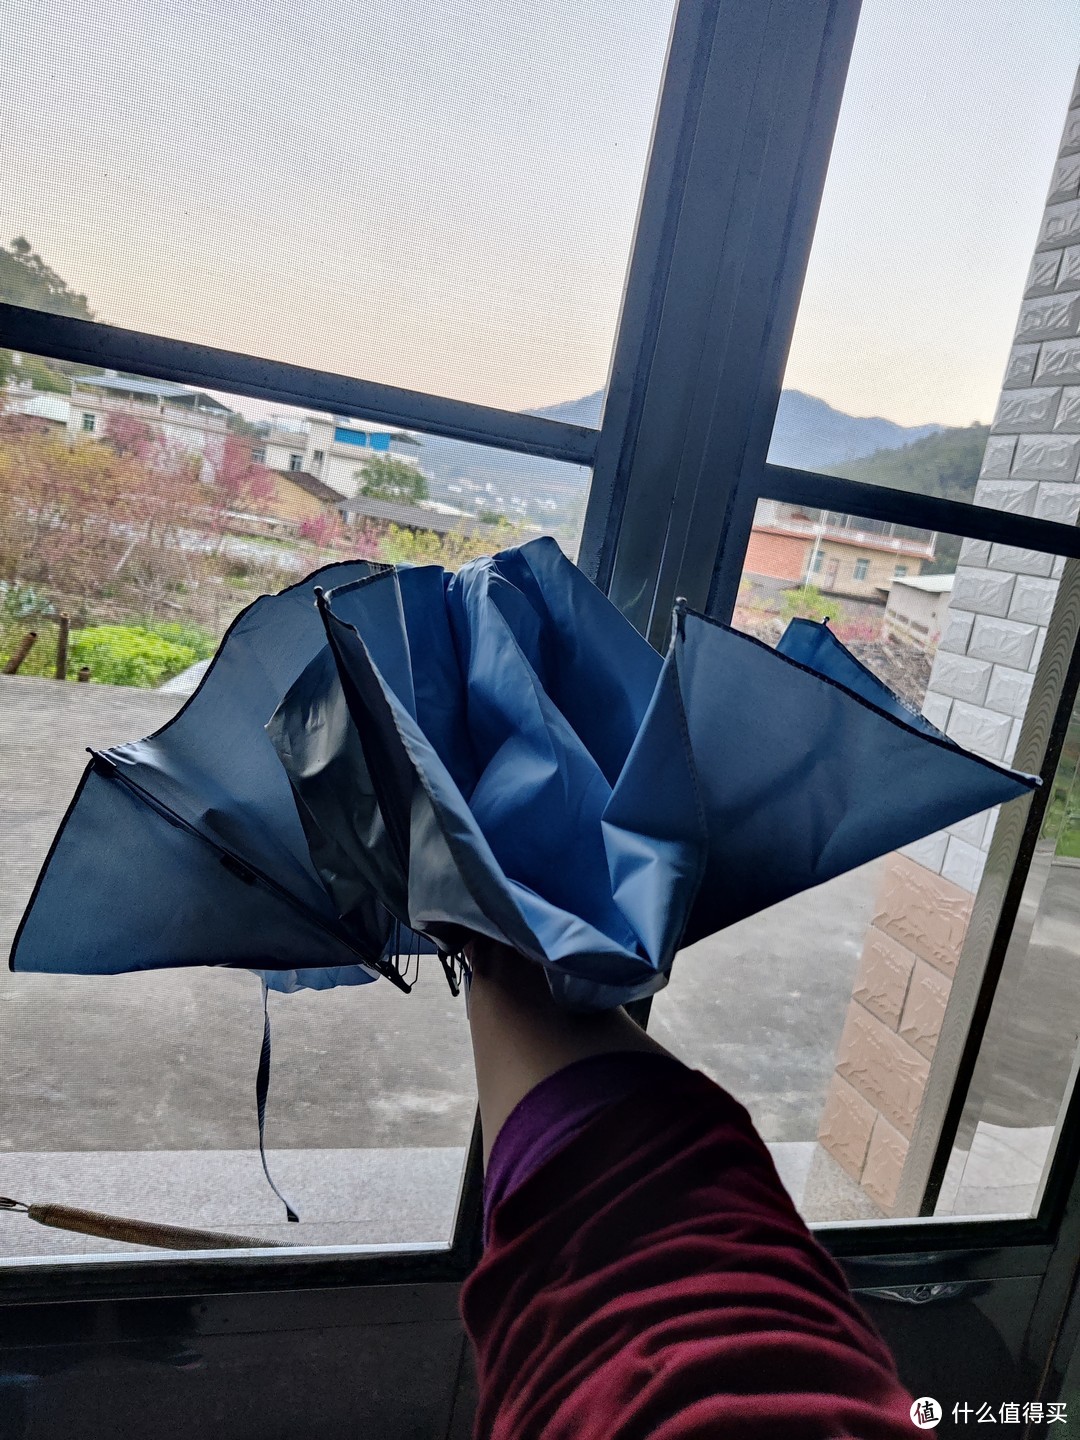 学习生活中必不可少的物品之雨伞